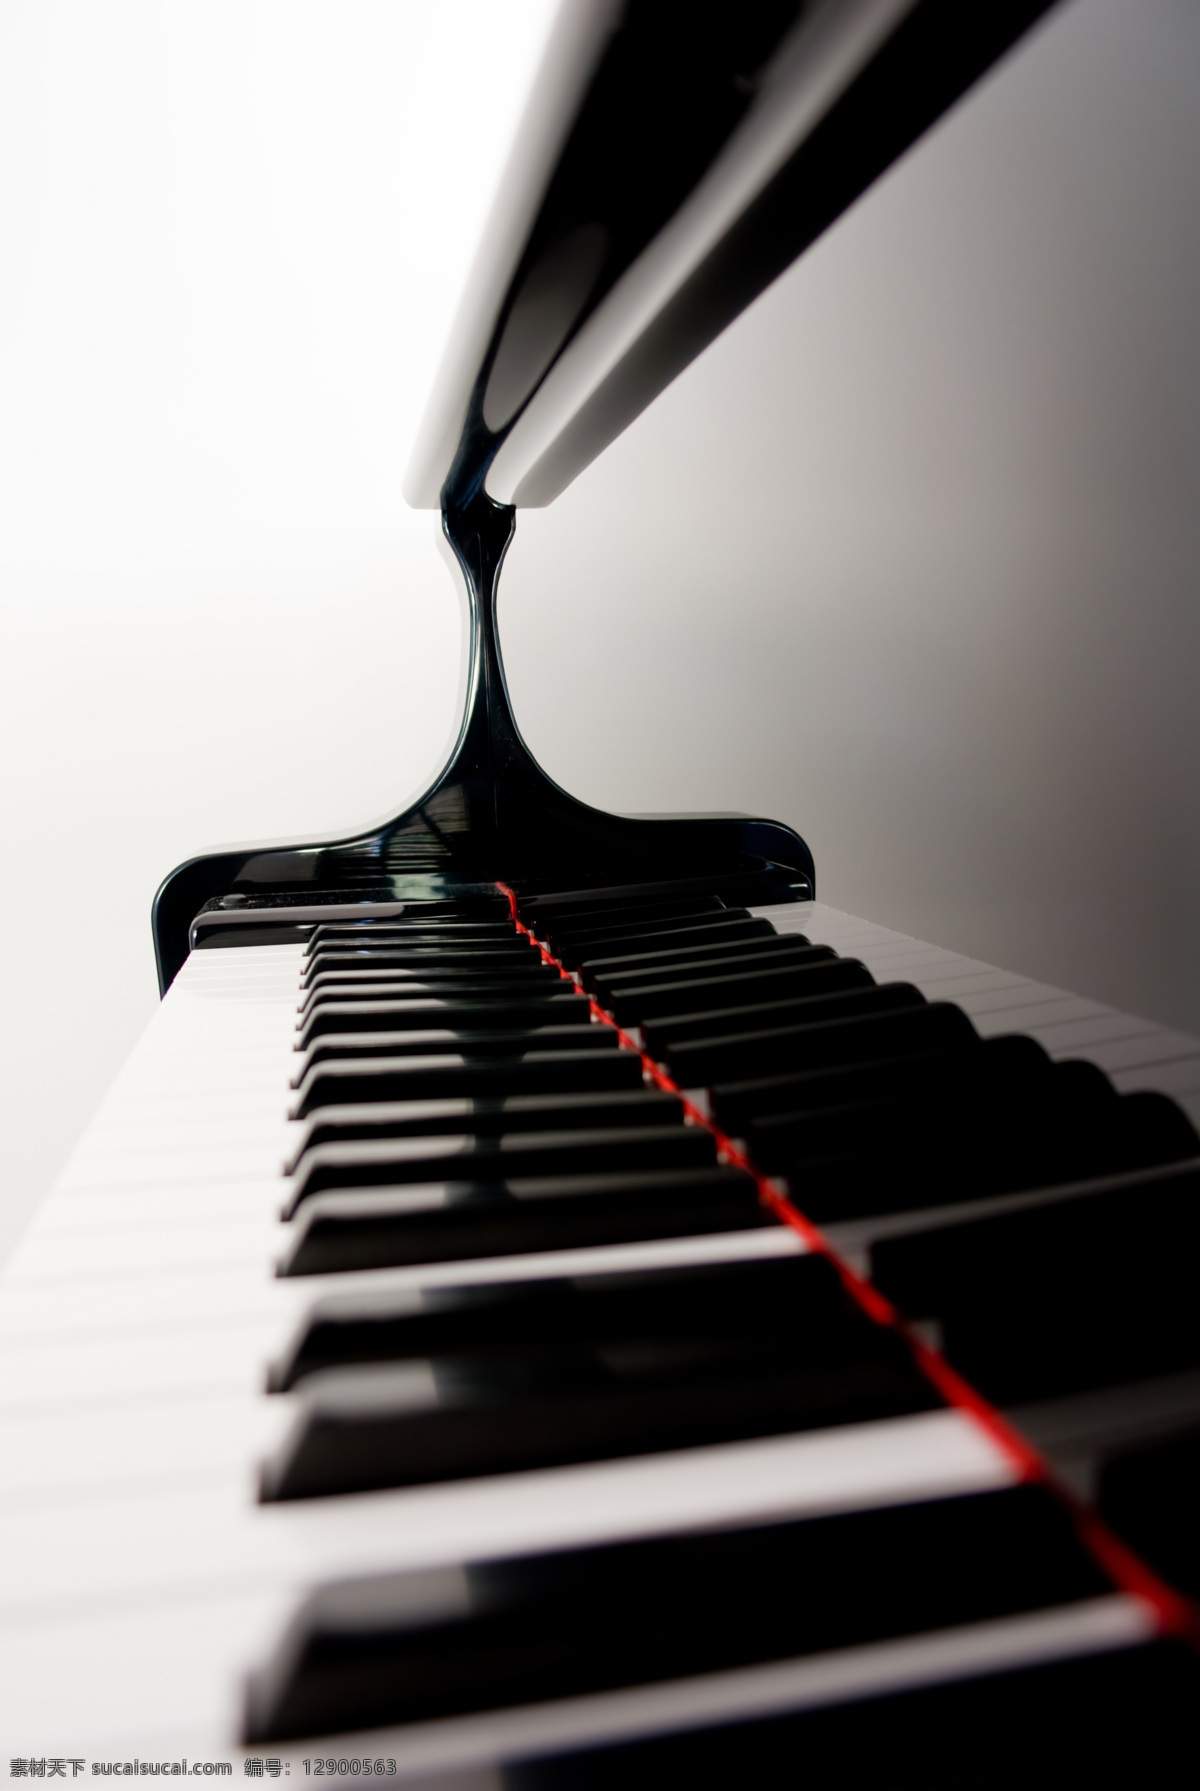 高清 钢琴 黑白 键 高清素材 设计素材 钢琴黑白键